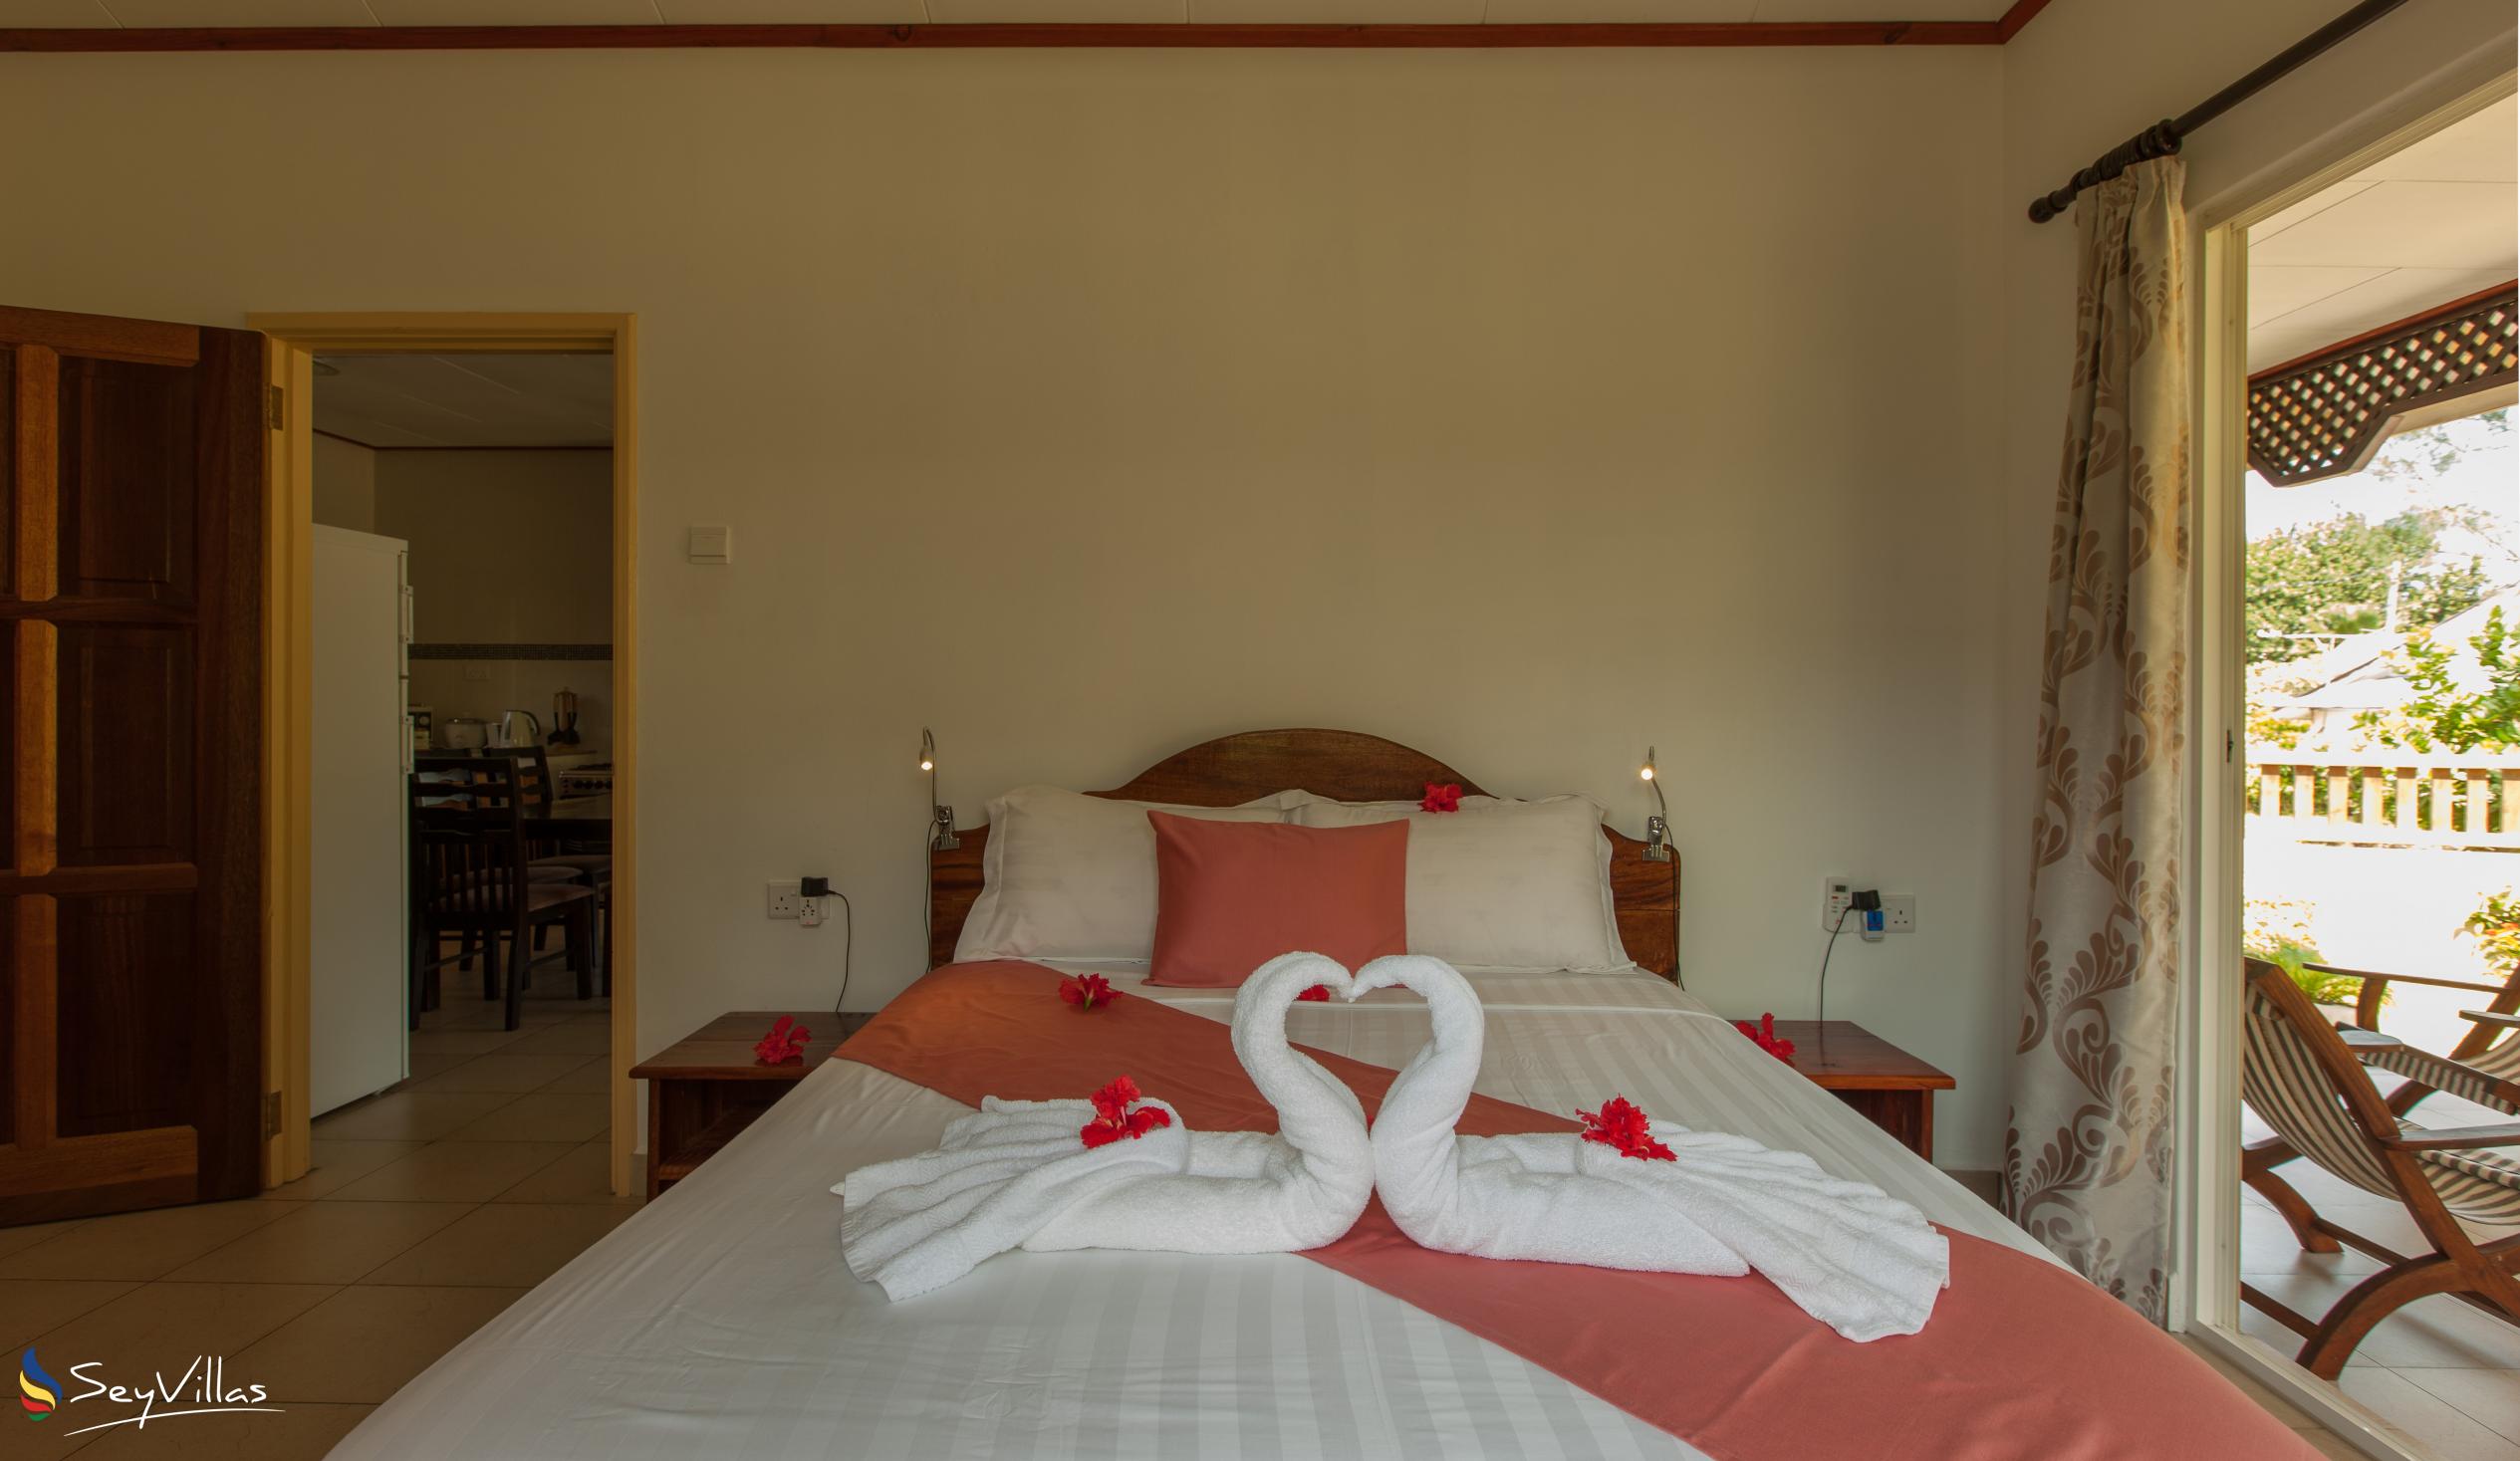 Photo 50: Hostellerie La Digue - 2-Bedroom Chalet - La Digue (Seychelles)